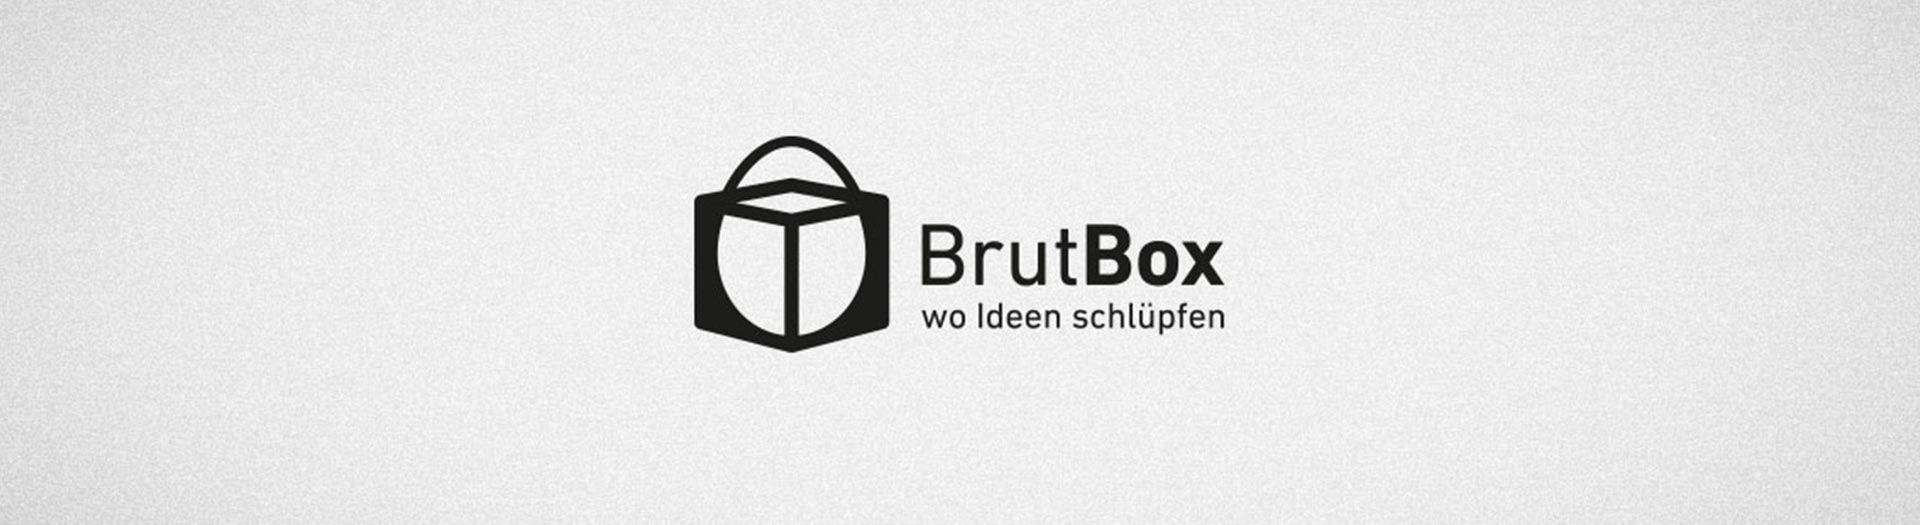 Brutbox Onepager - tp werbeagentur